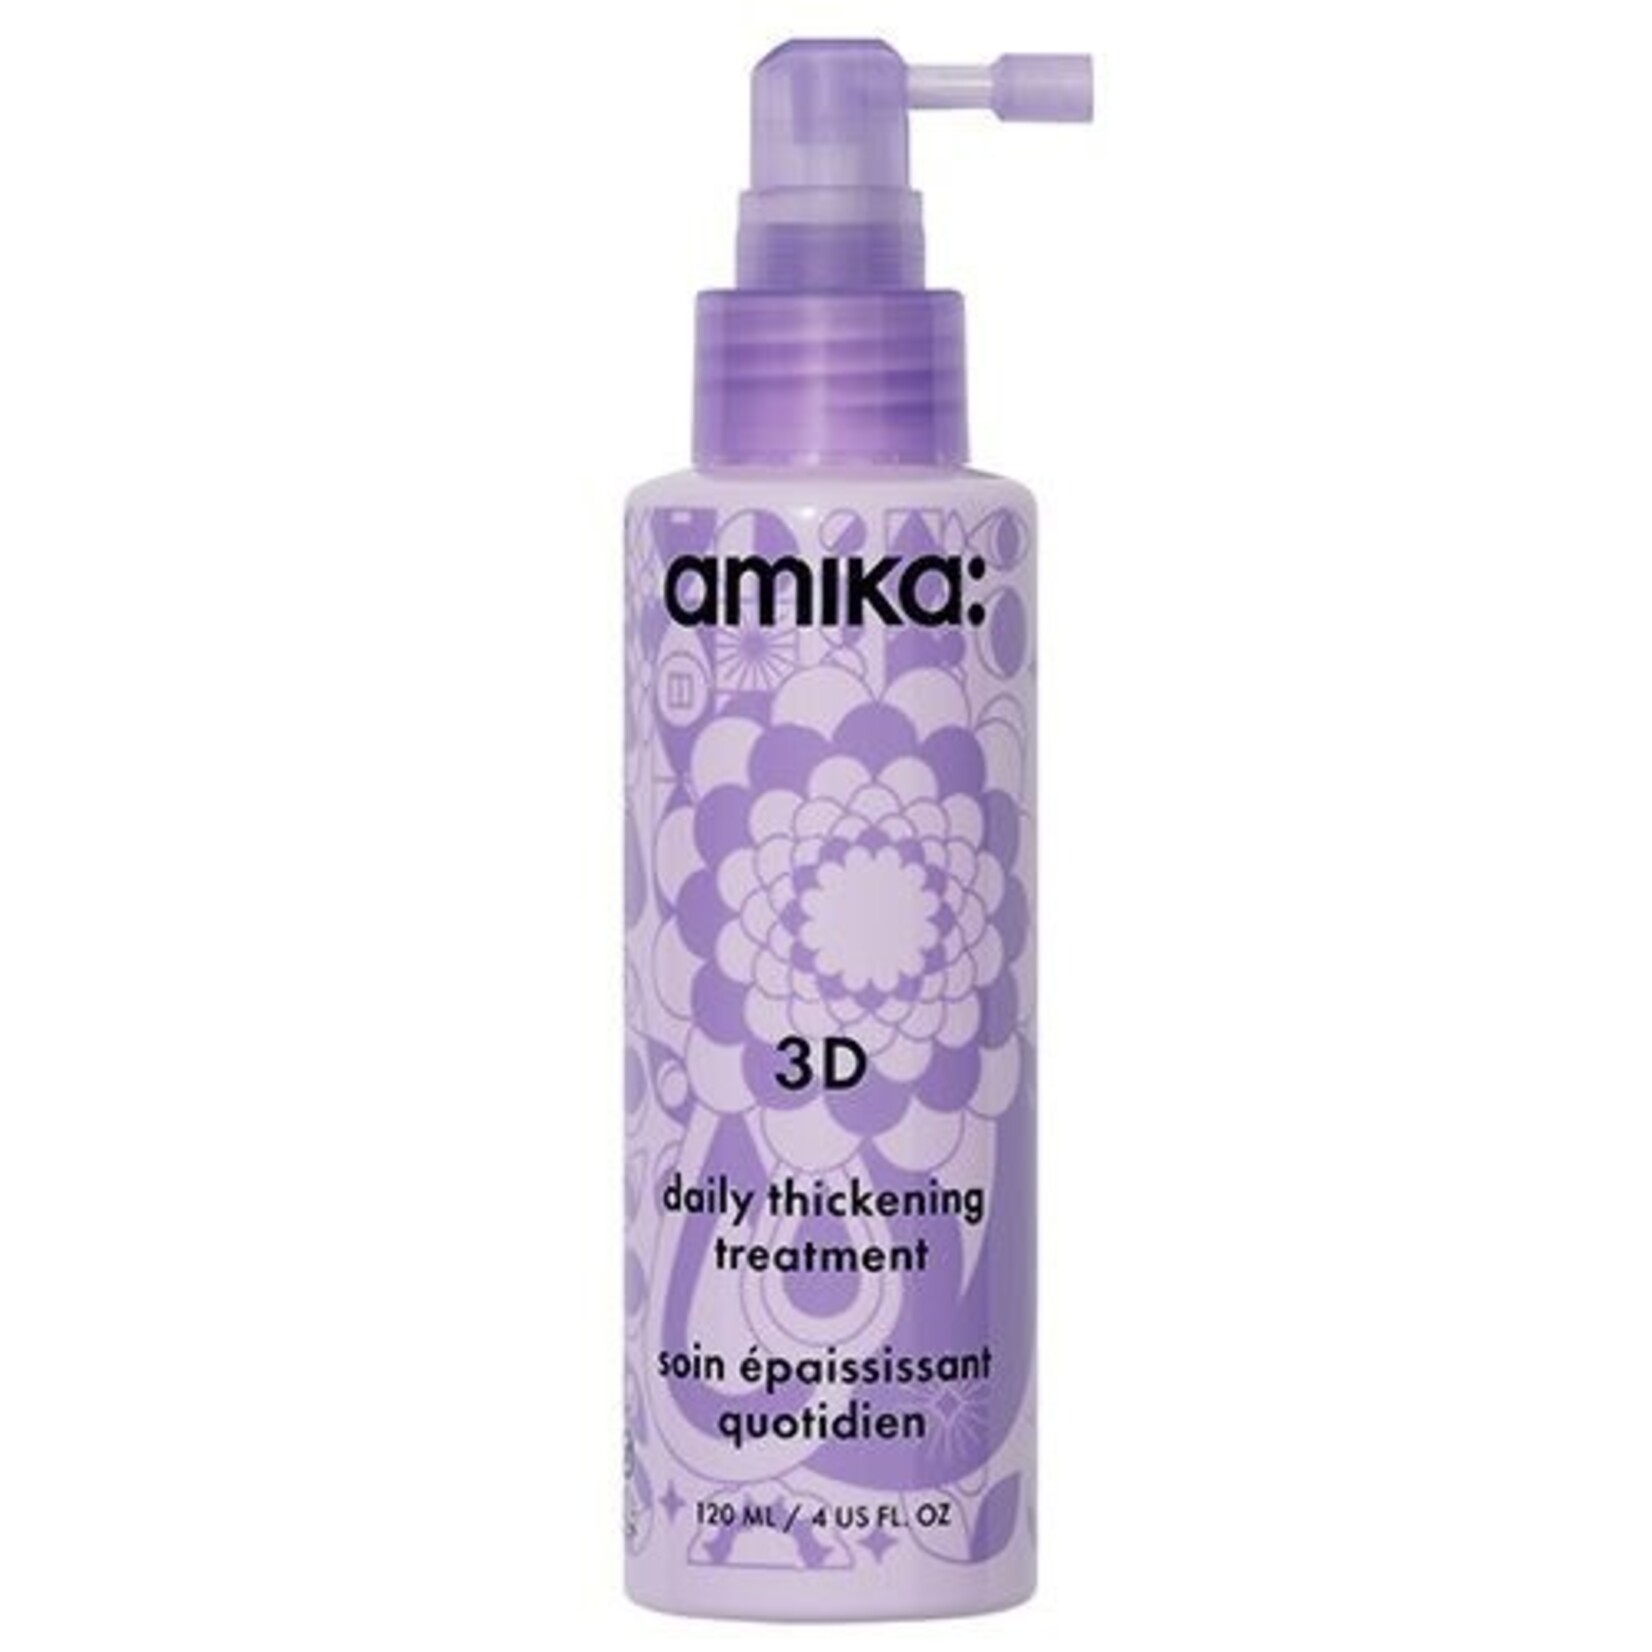 Amika: Amika: - 3D - Daily thickening treatment 120ml